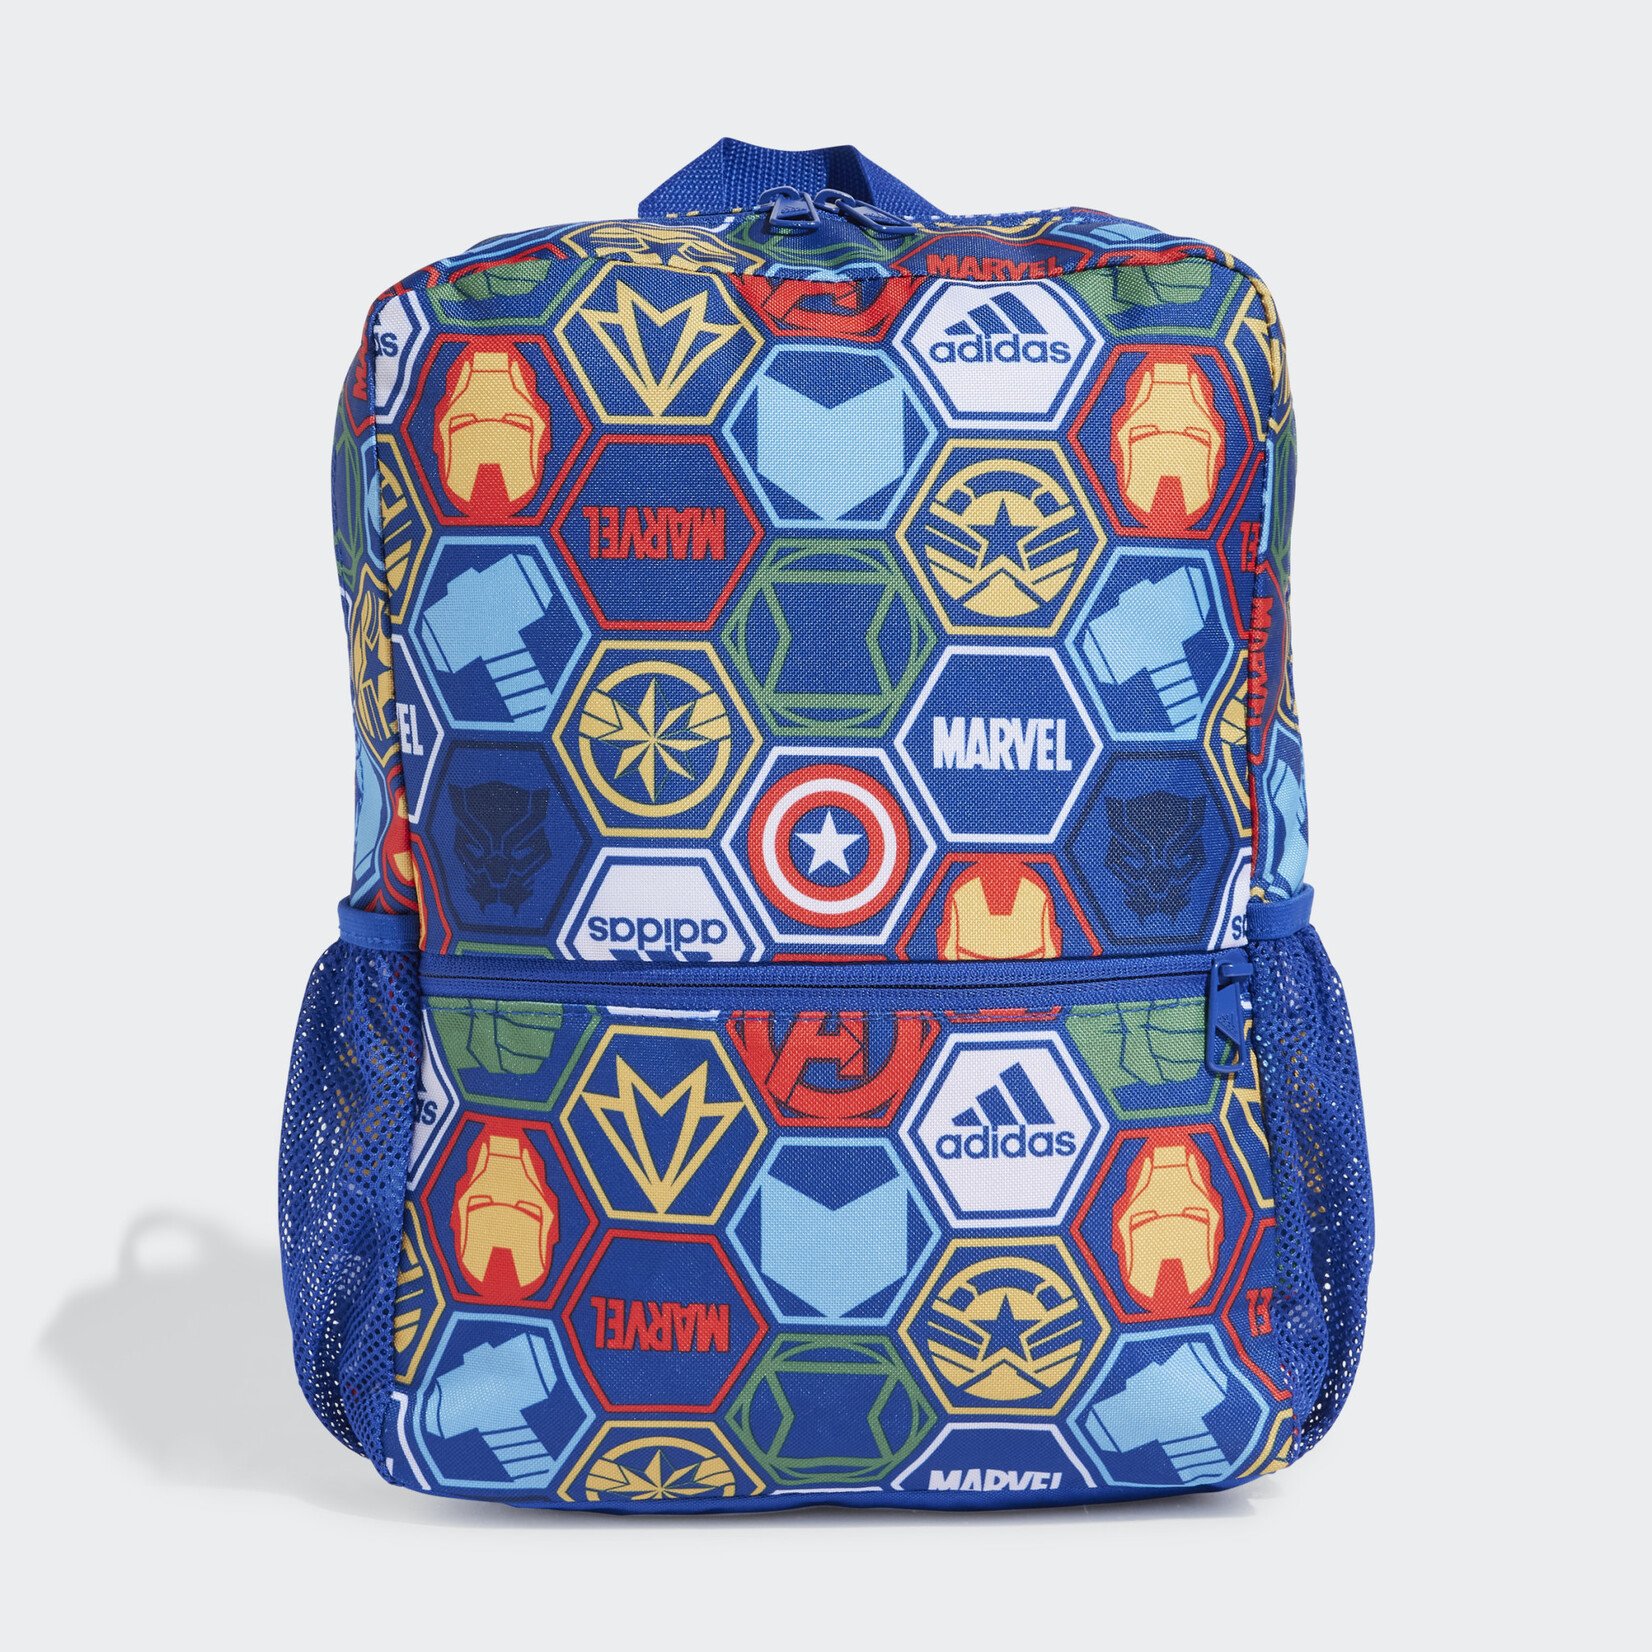 Adidas Marvel's Avengers Backpack Kids